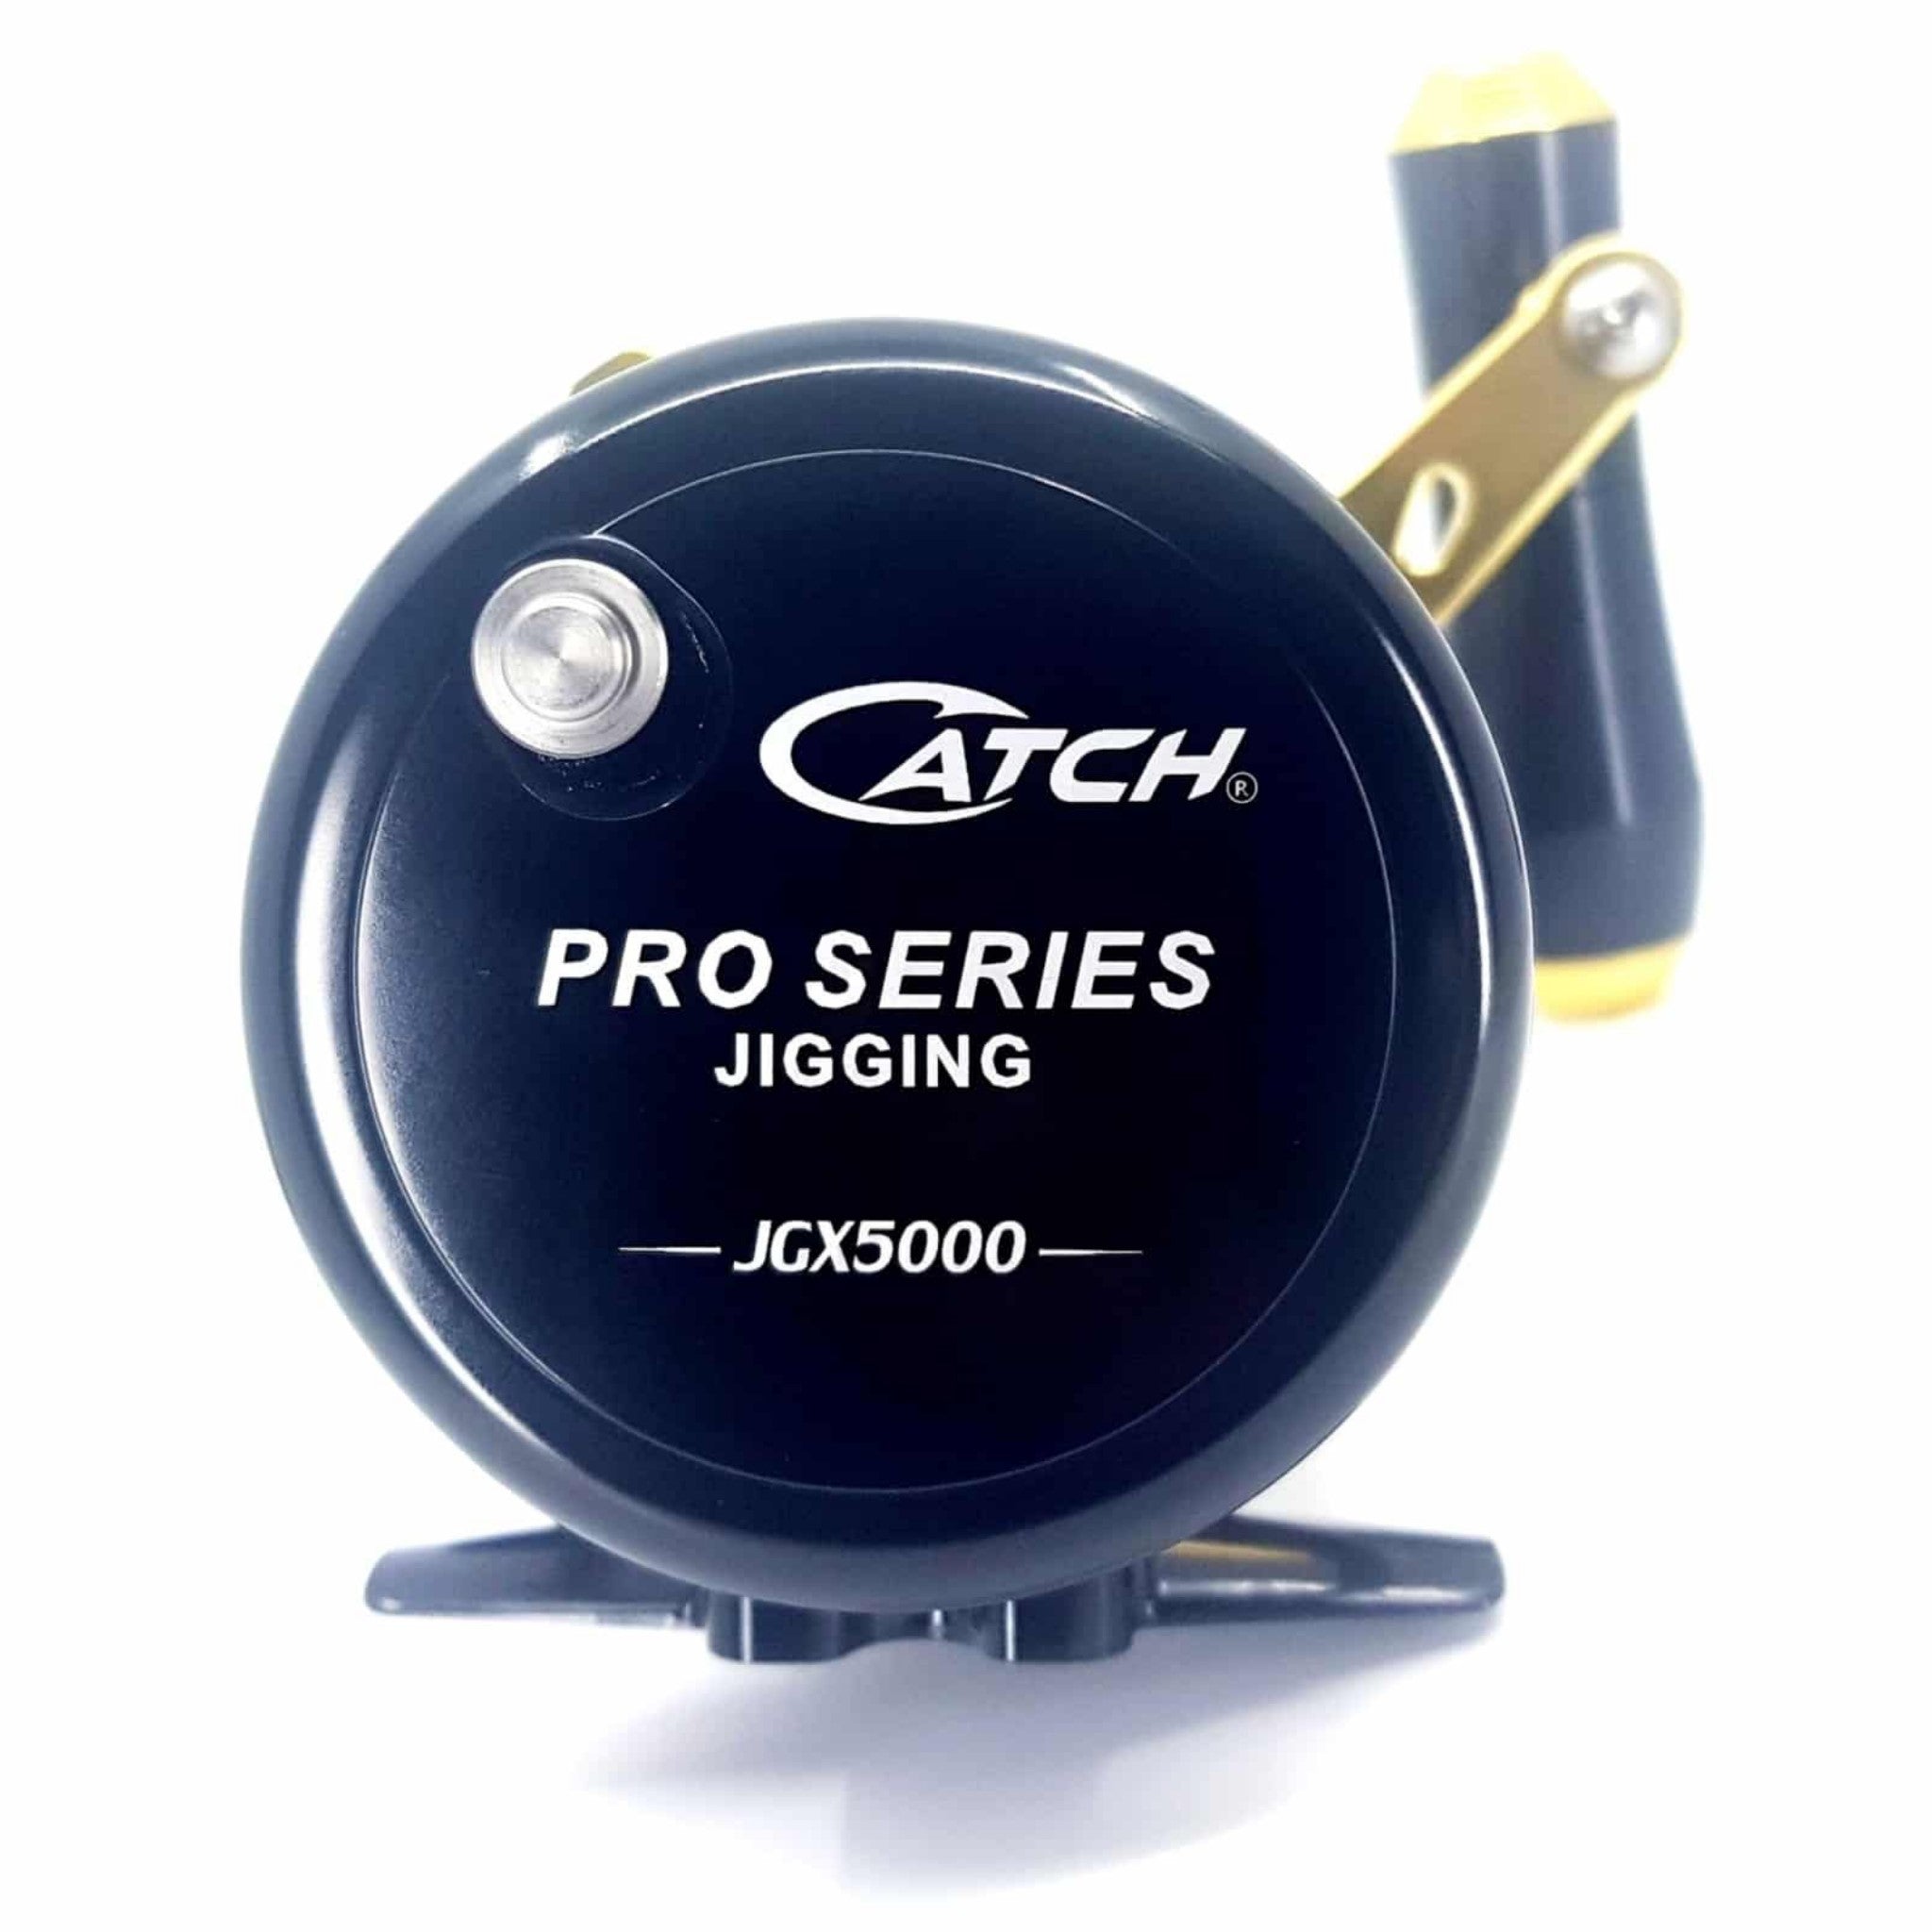 Catch Pro Series JGX5000 Jigging Reel Left Handed – Boss Outdoor